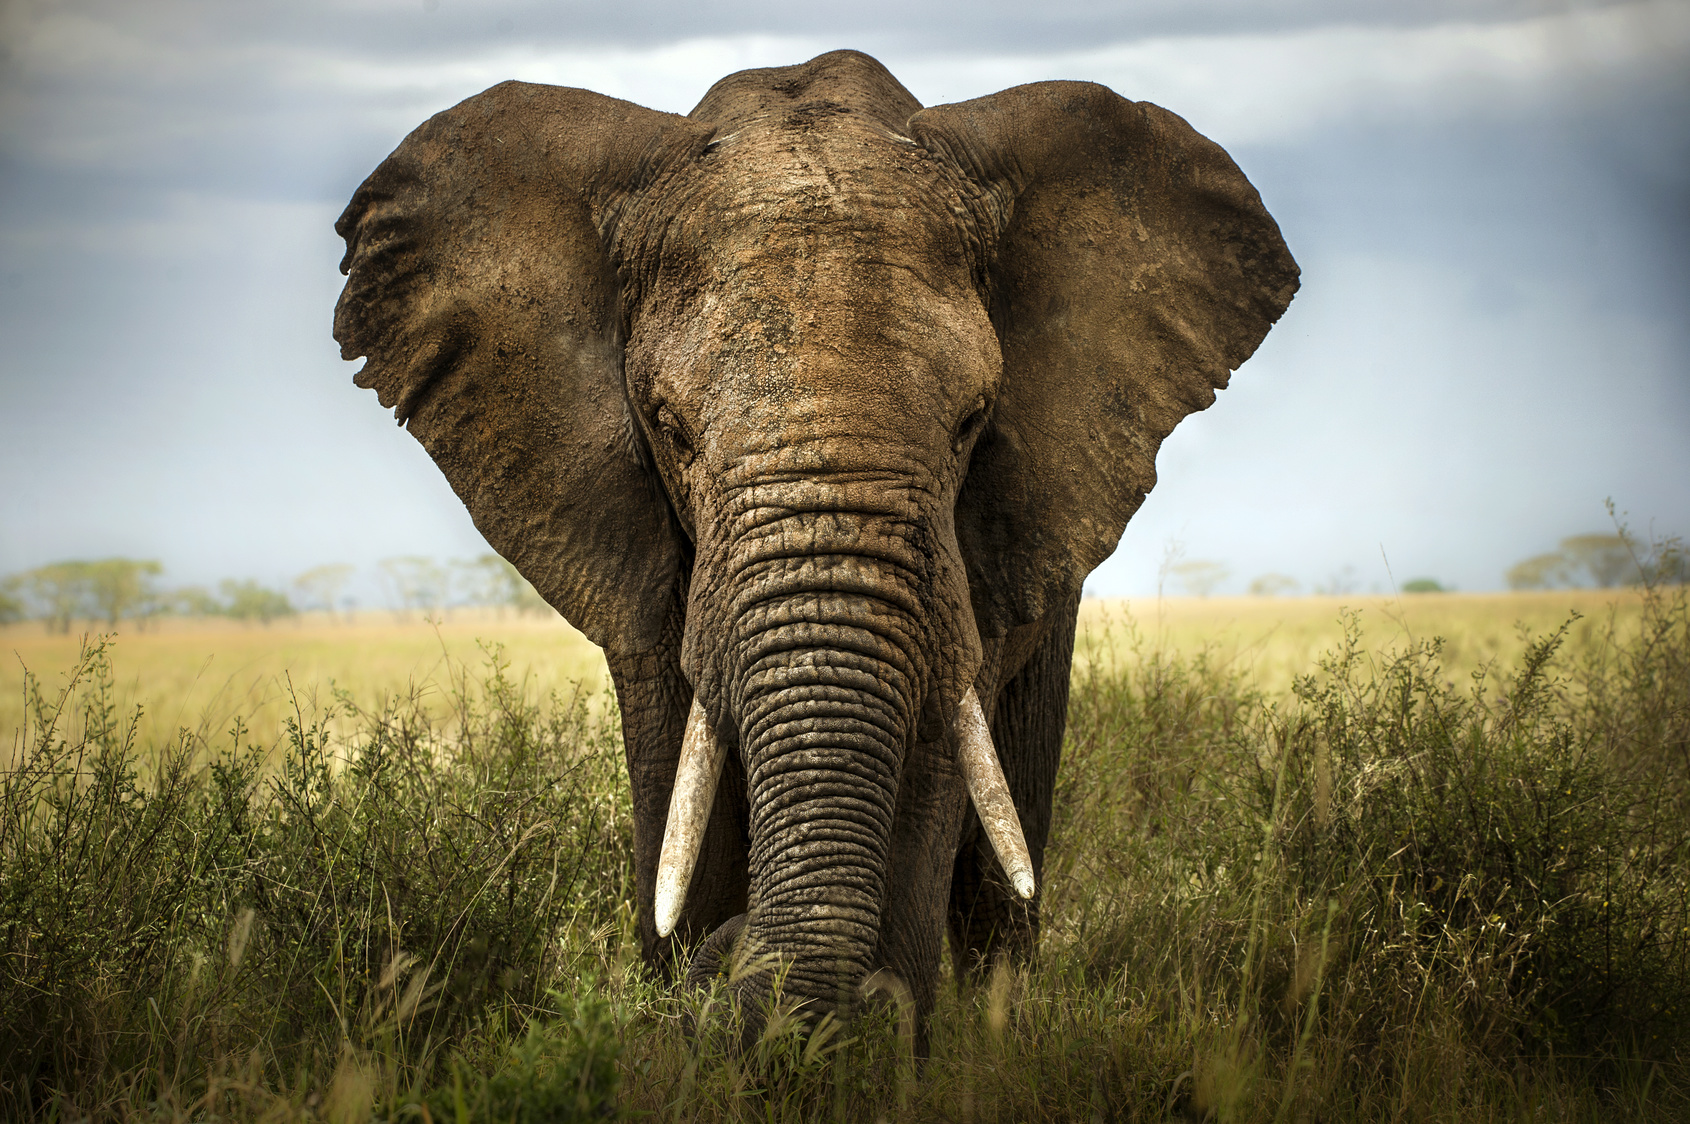 Elefanti: i santuari dove vederli in modo etico